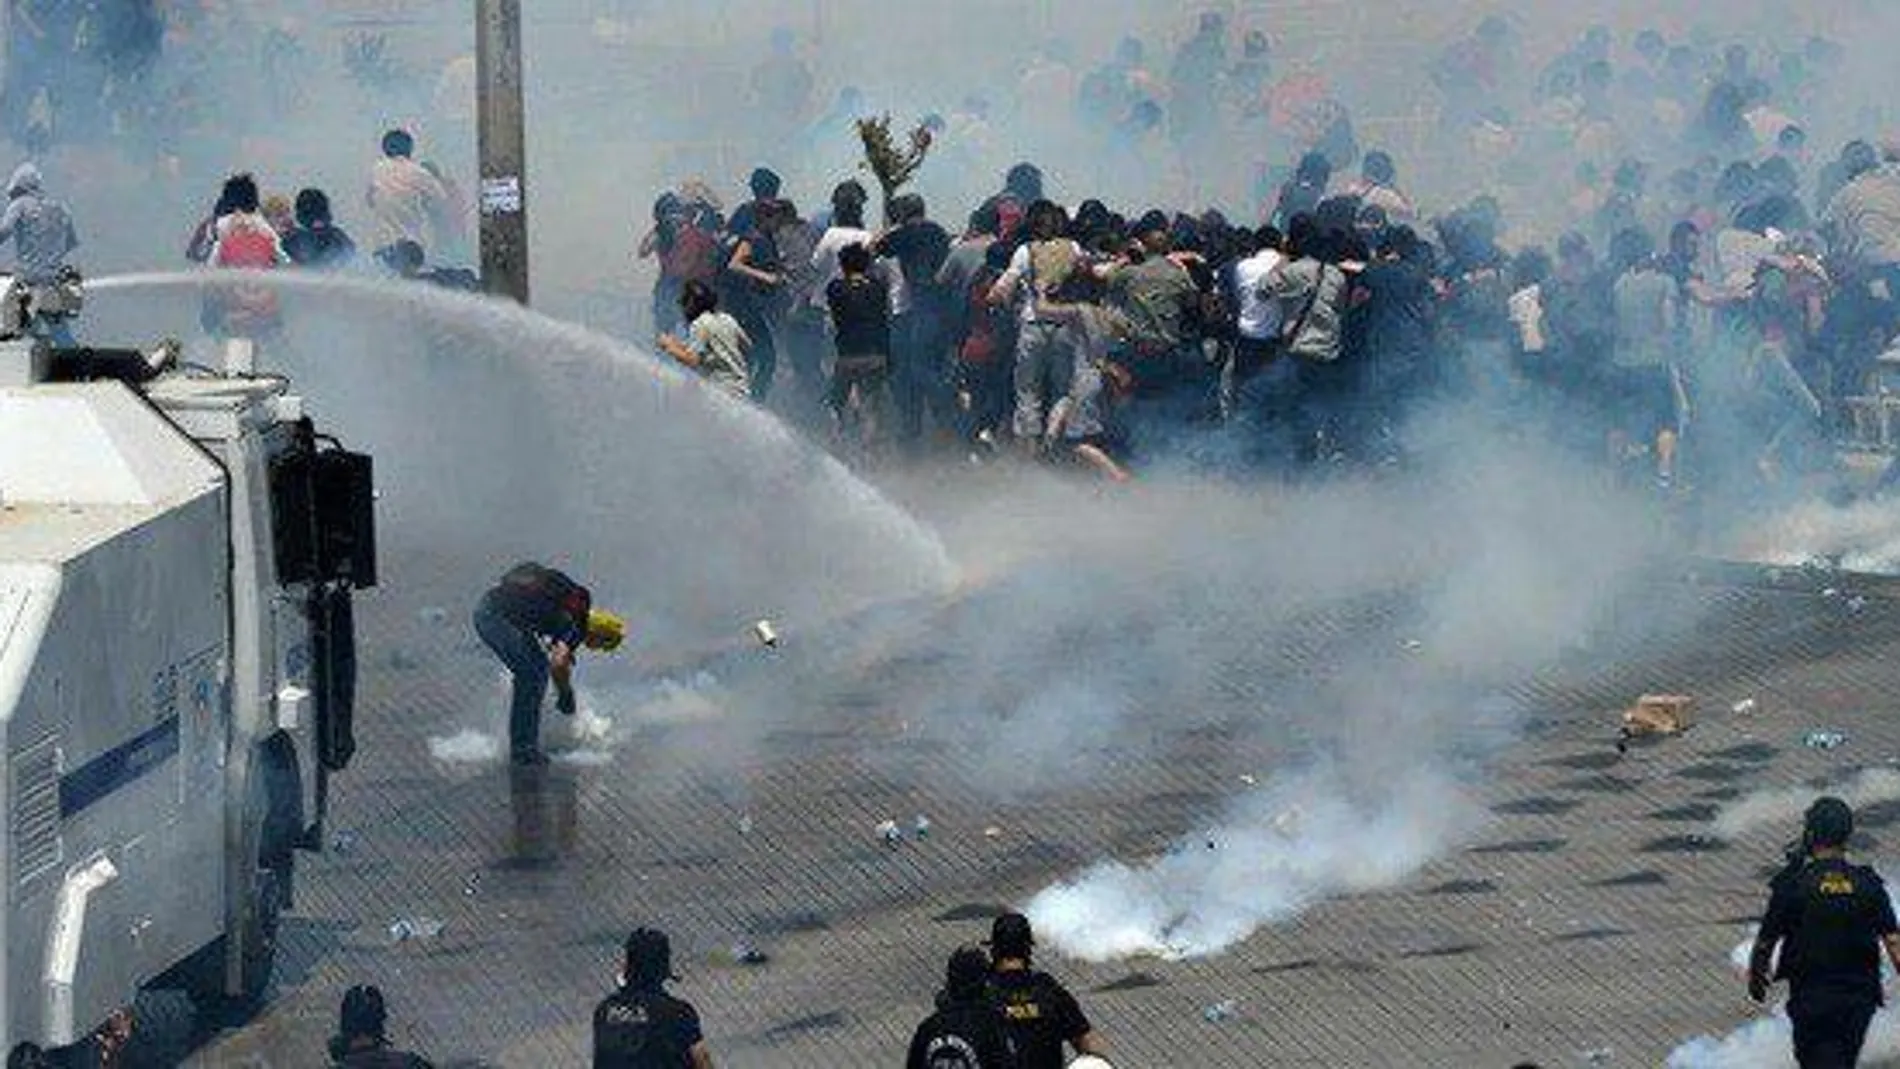 Chorros de agua contra los manifestantes en Estambul